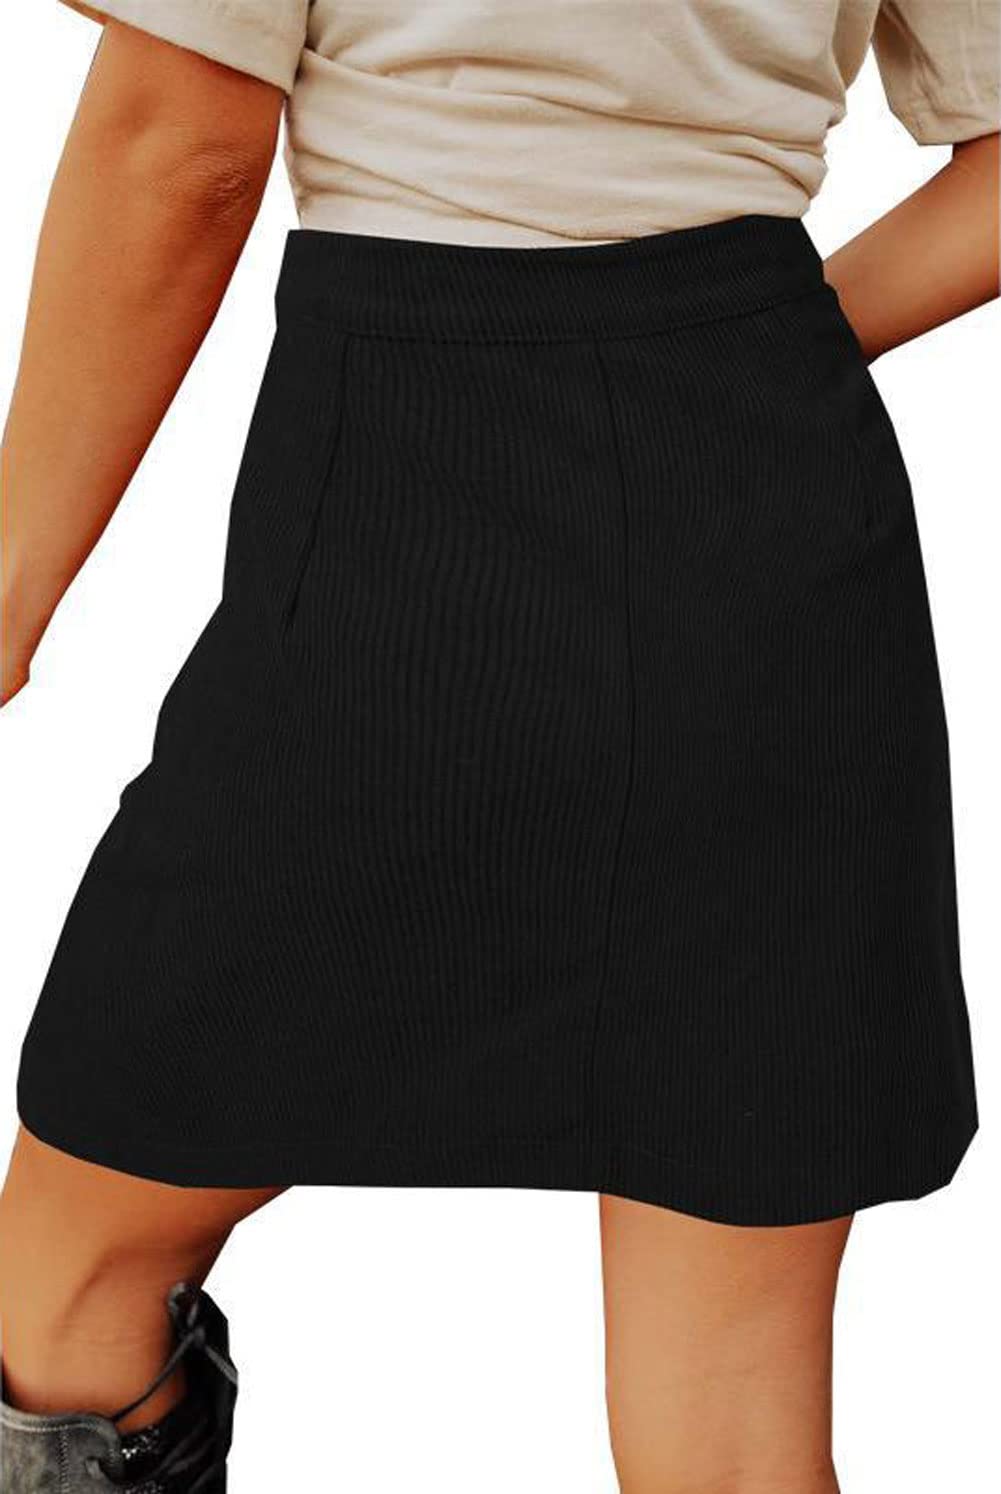 Chouyatou Women Corduroy Skirt Suede Pencil Skirt Office High Waist Button Bodycon Skirt Knee Length